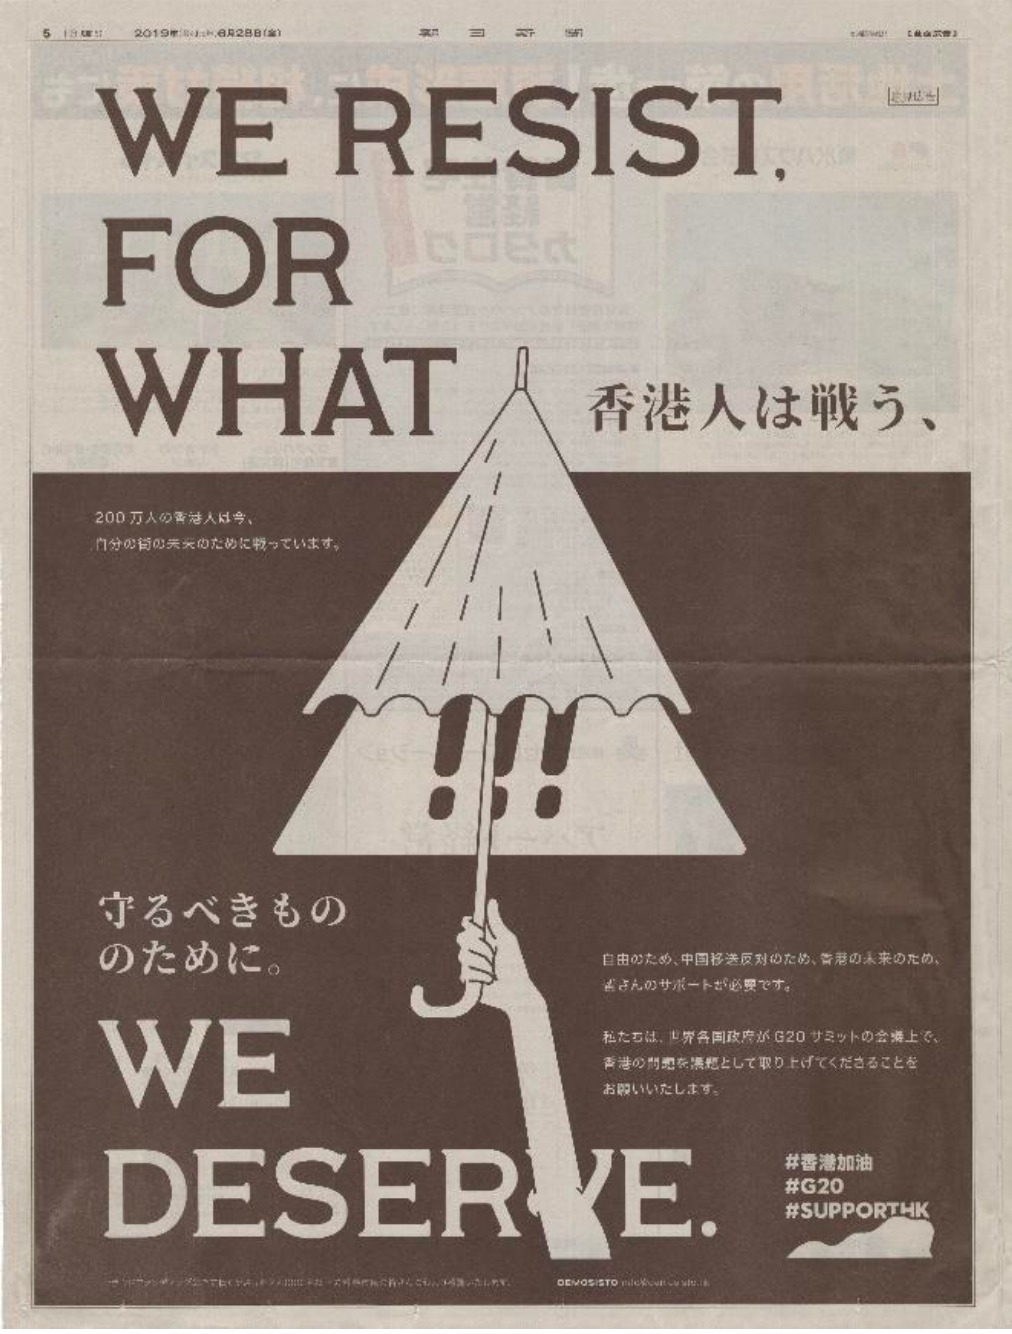 日本《朝日新聞》(The Asahi Shimbun)的廣告。網圖